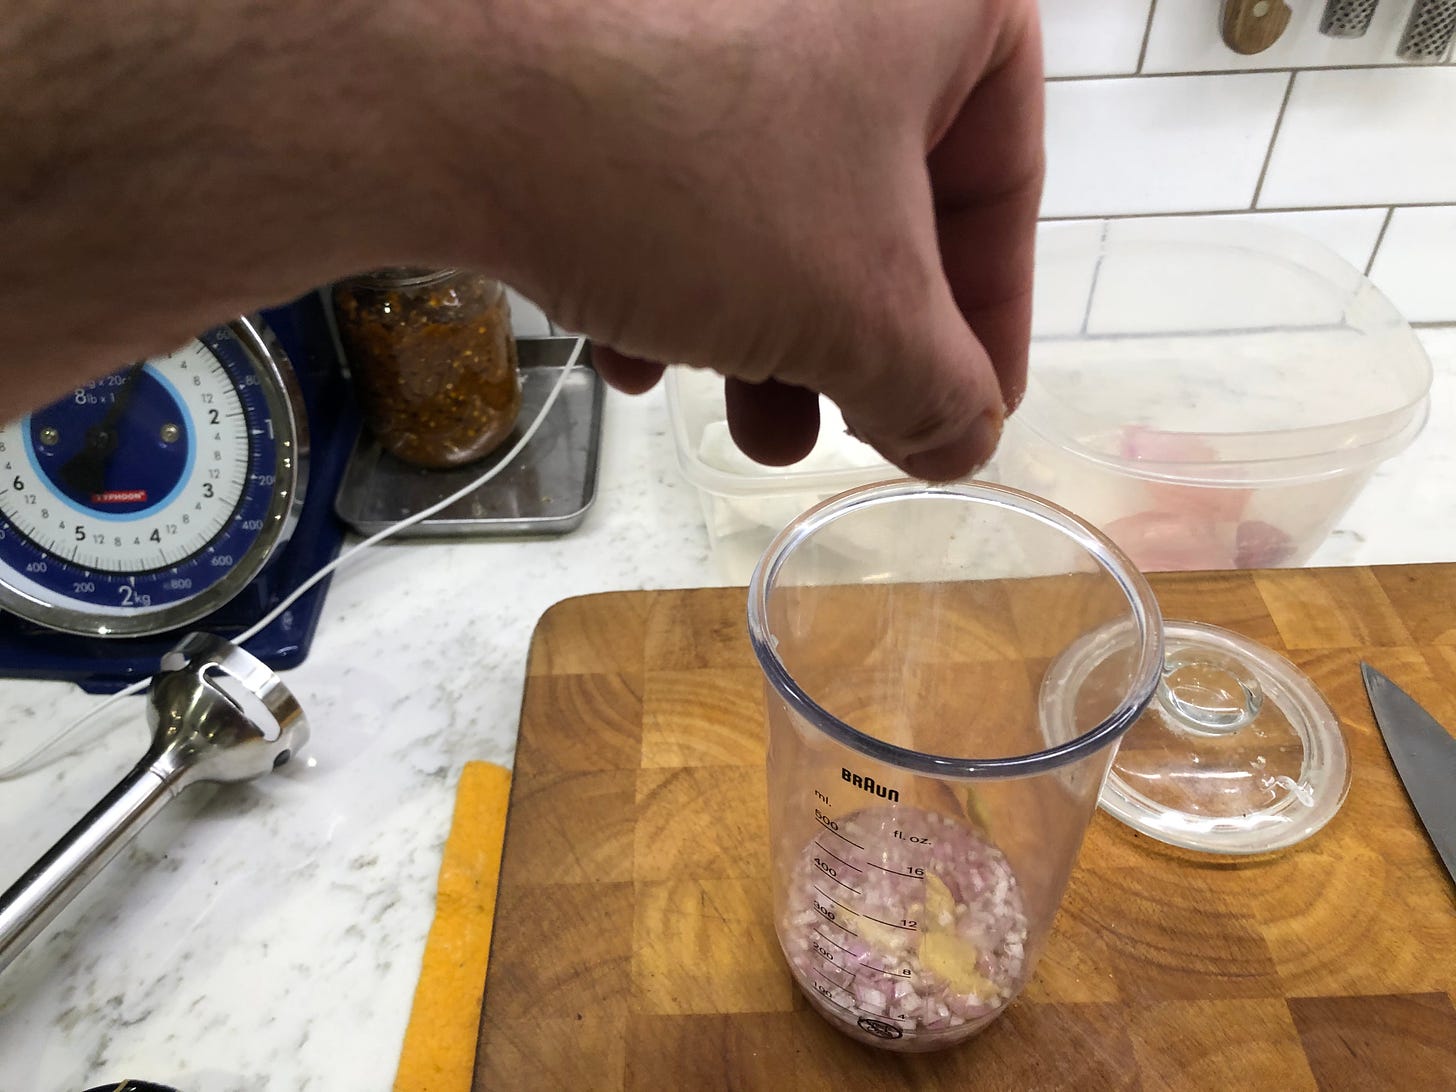 Salt added to vinegar mixture